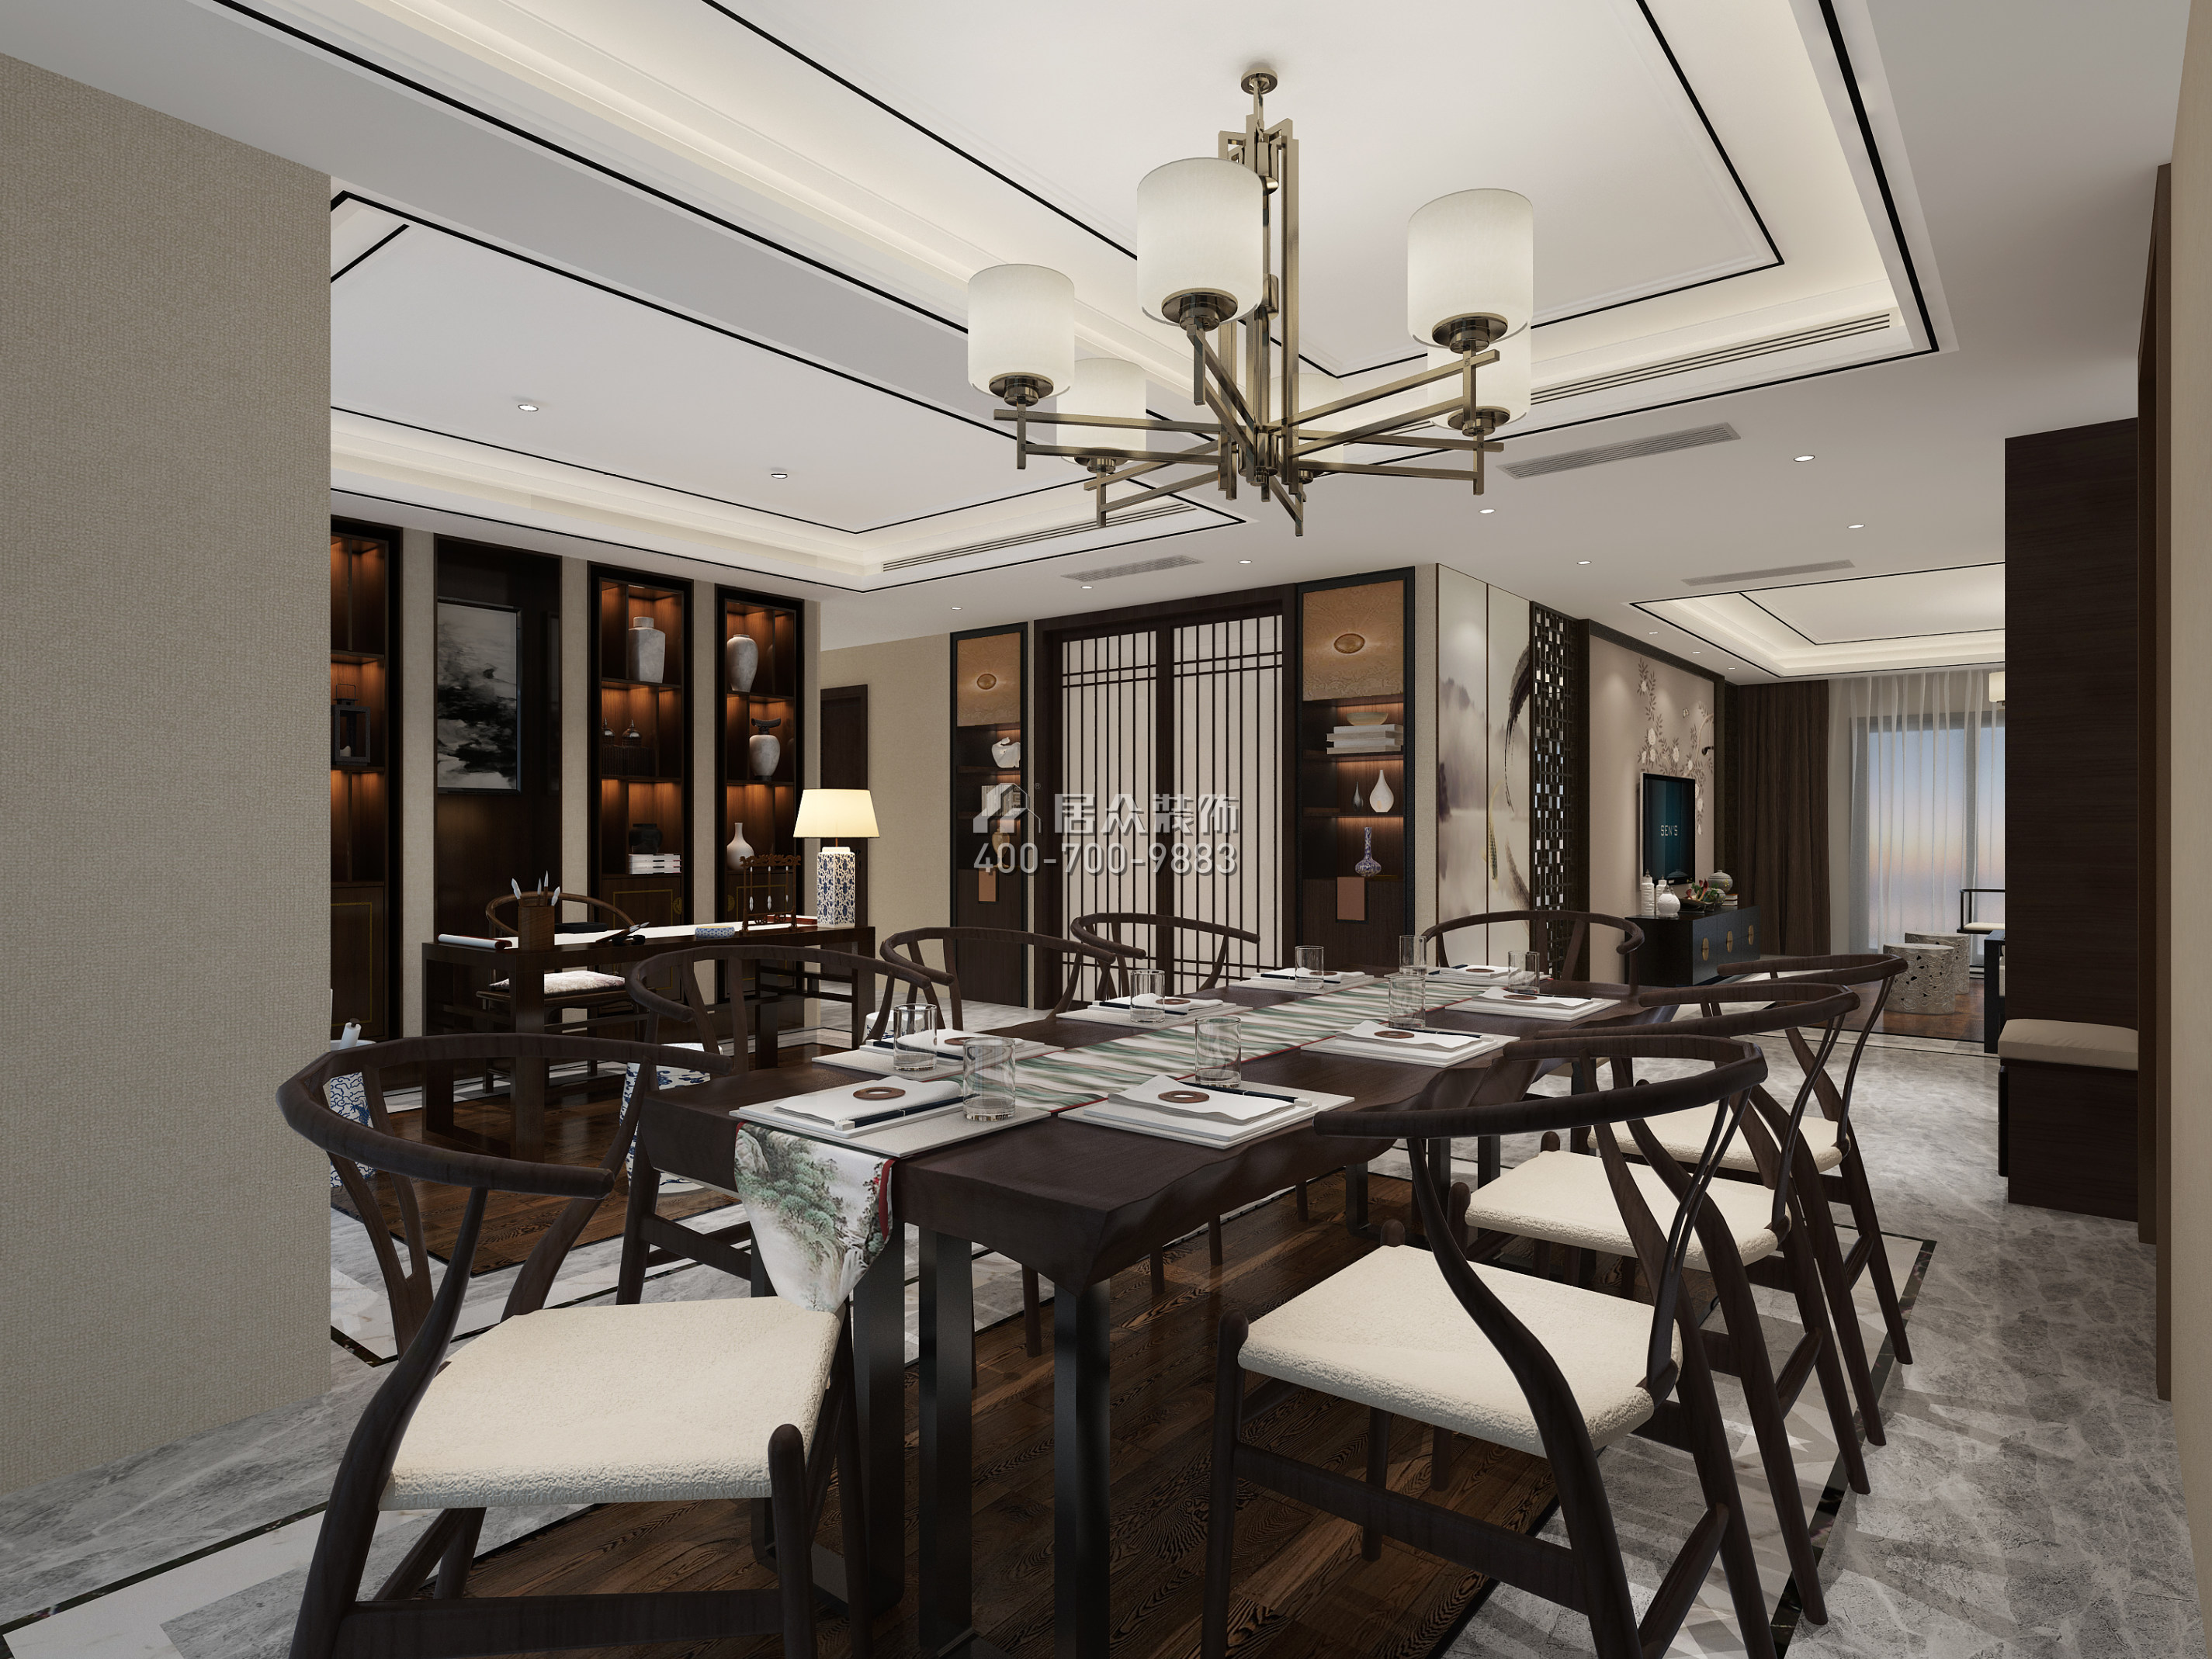 山语清晖一期220平方米中式风格平层户型餐厅装修效果图